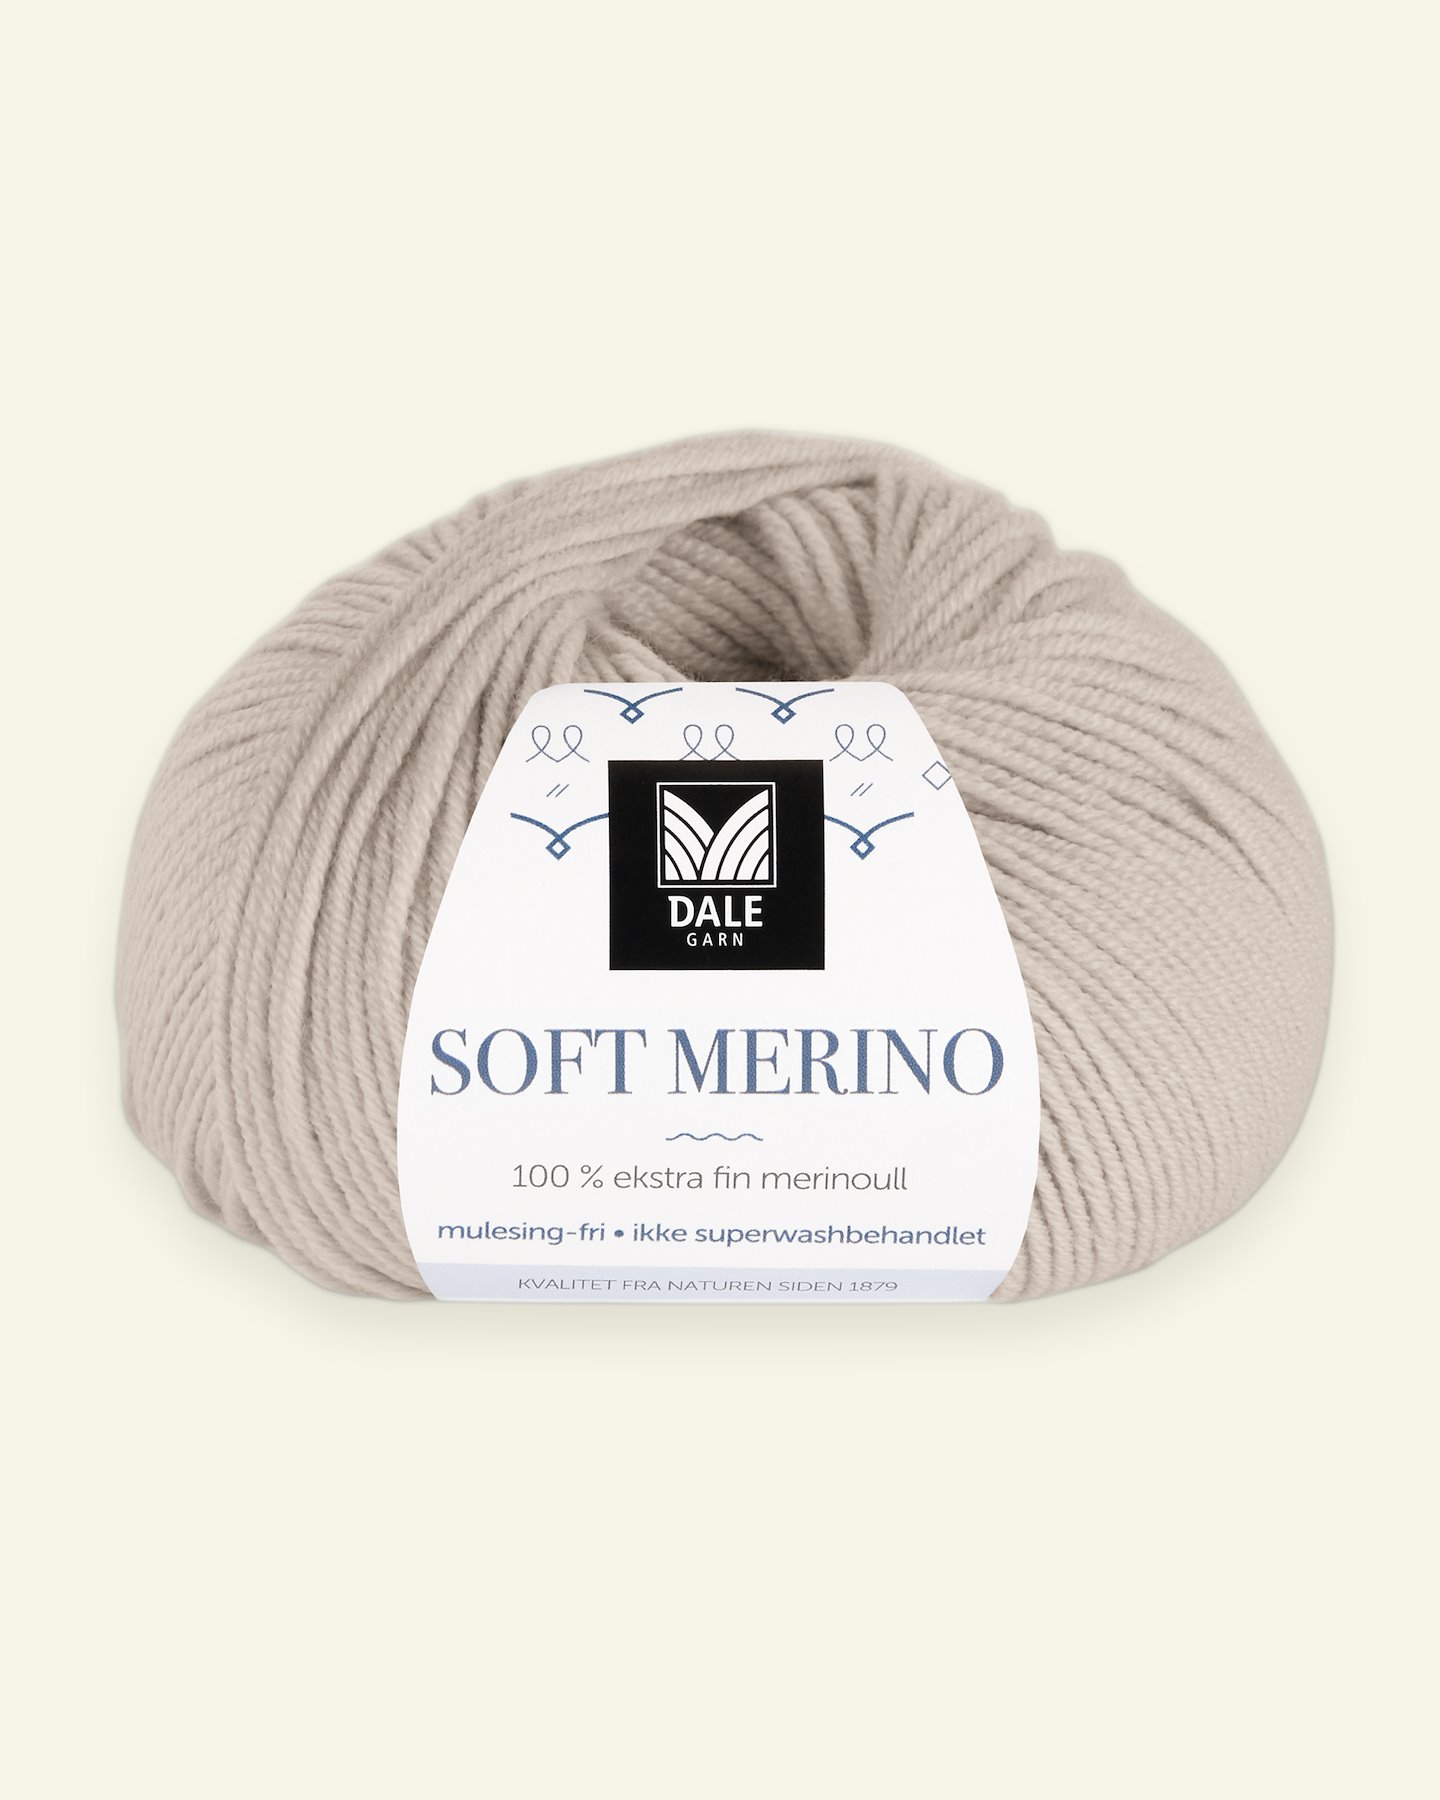 Dale Garn, 100% Extrafeine Merino-Wolle "Soft Merino", sand 90000327_pack